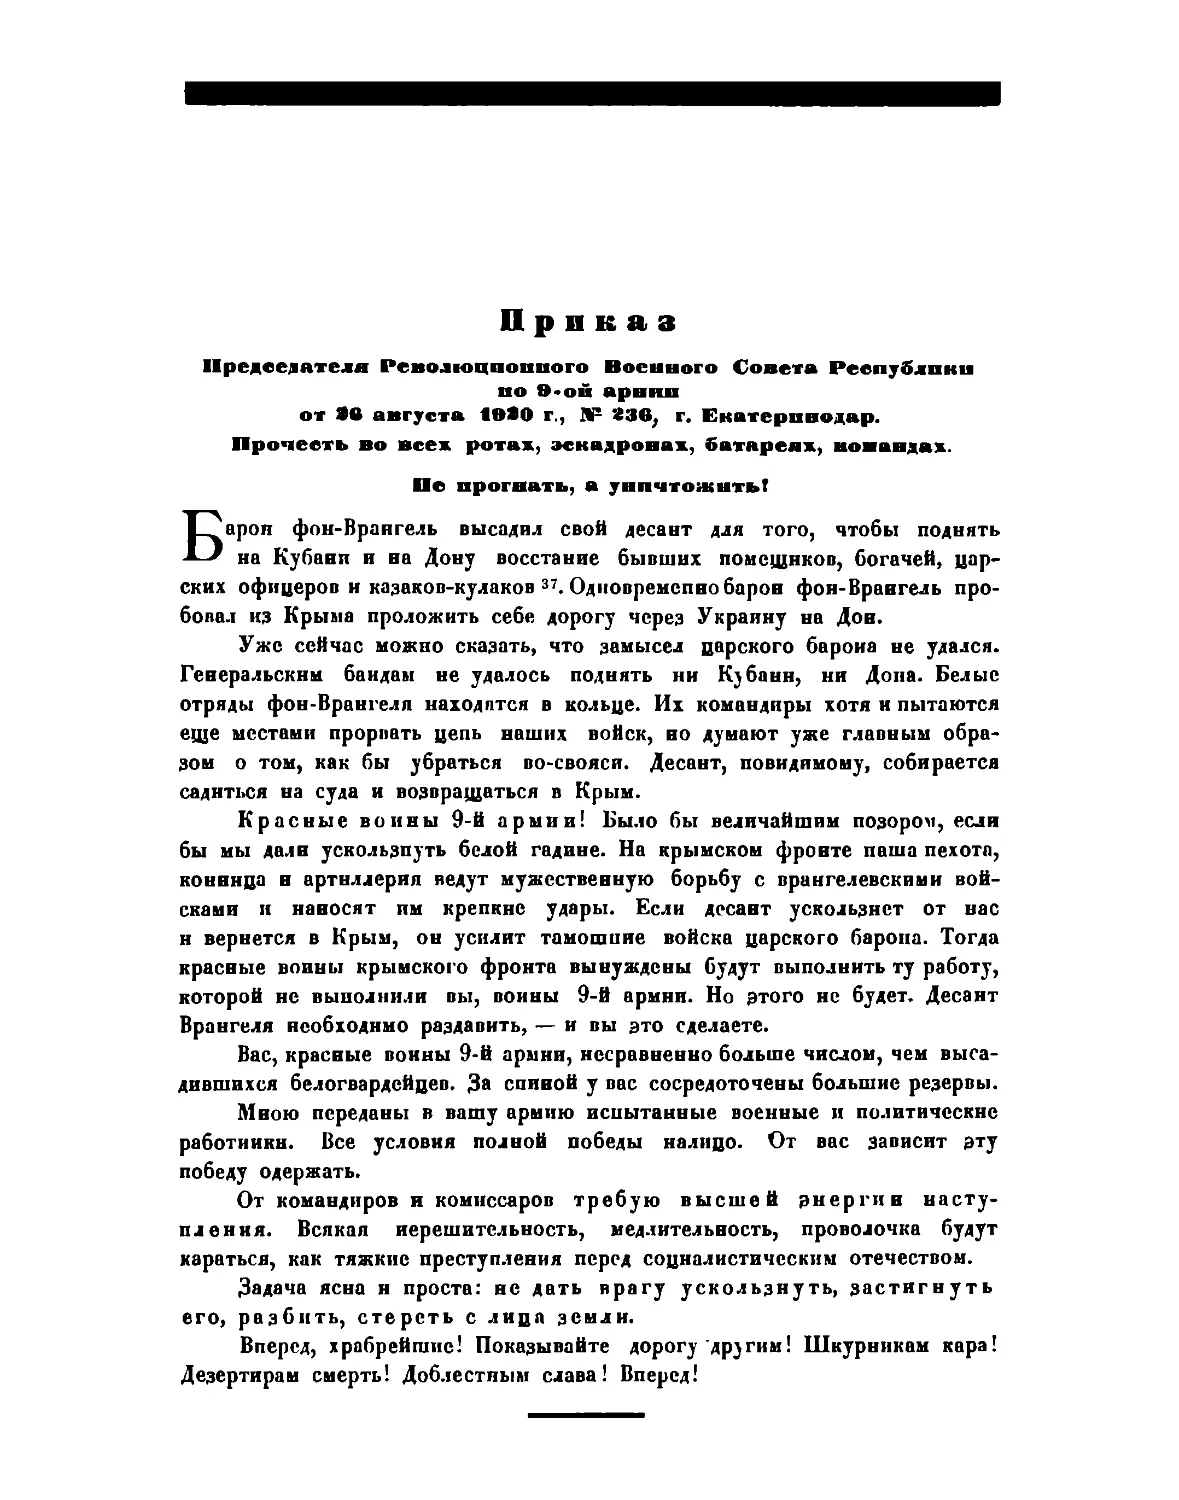 Приказ Пред. РВСР по 9-й армни от 26 августа 1920 г., № 236, гор. Екатеринодар